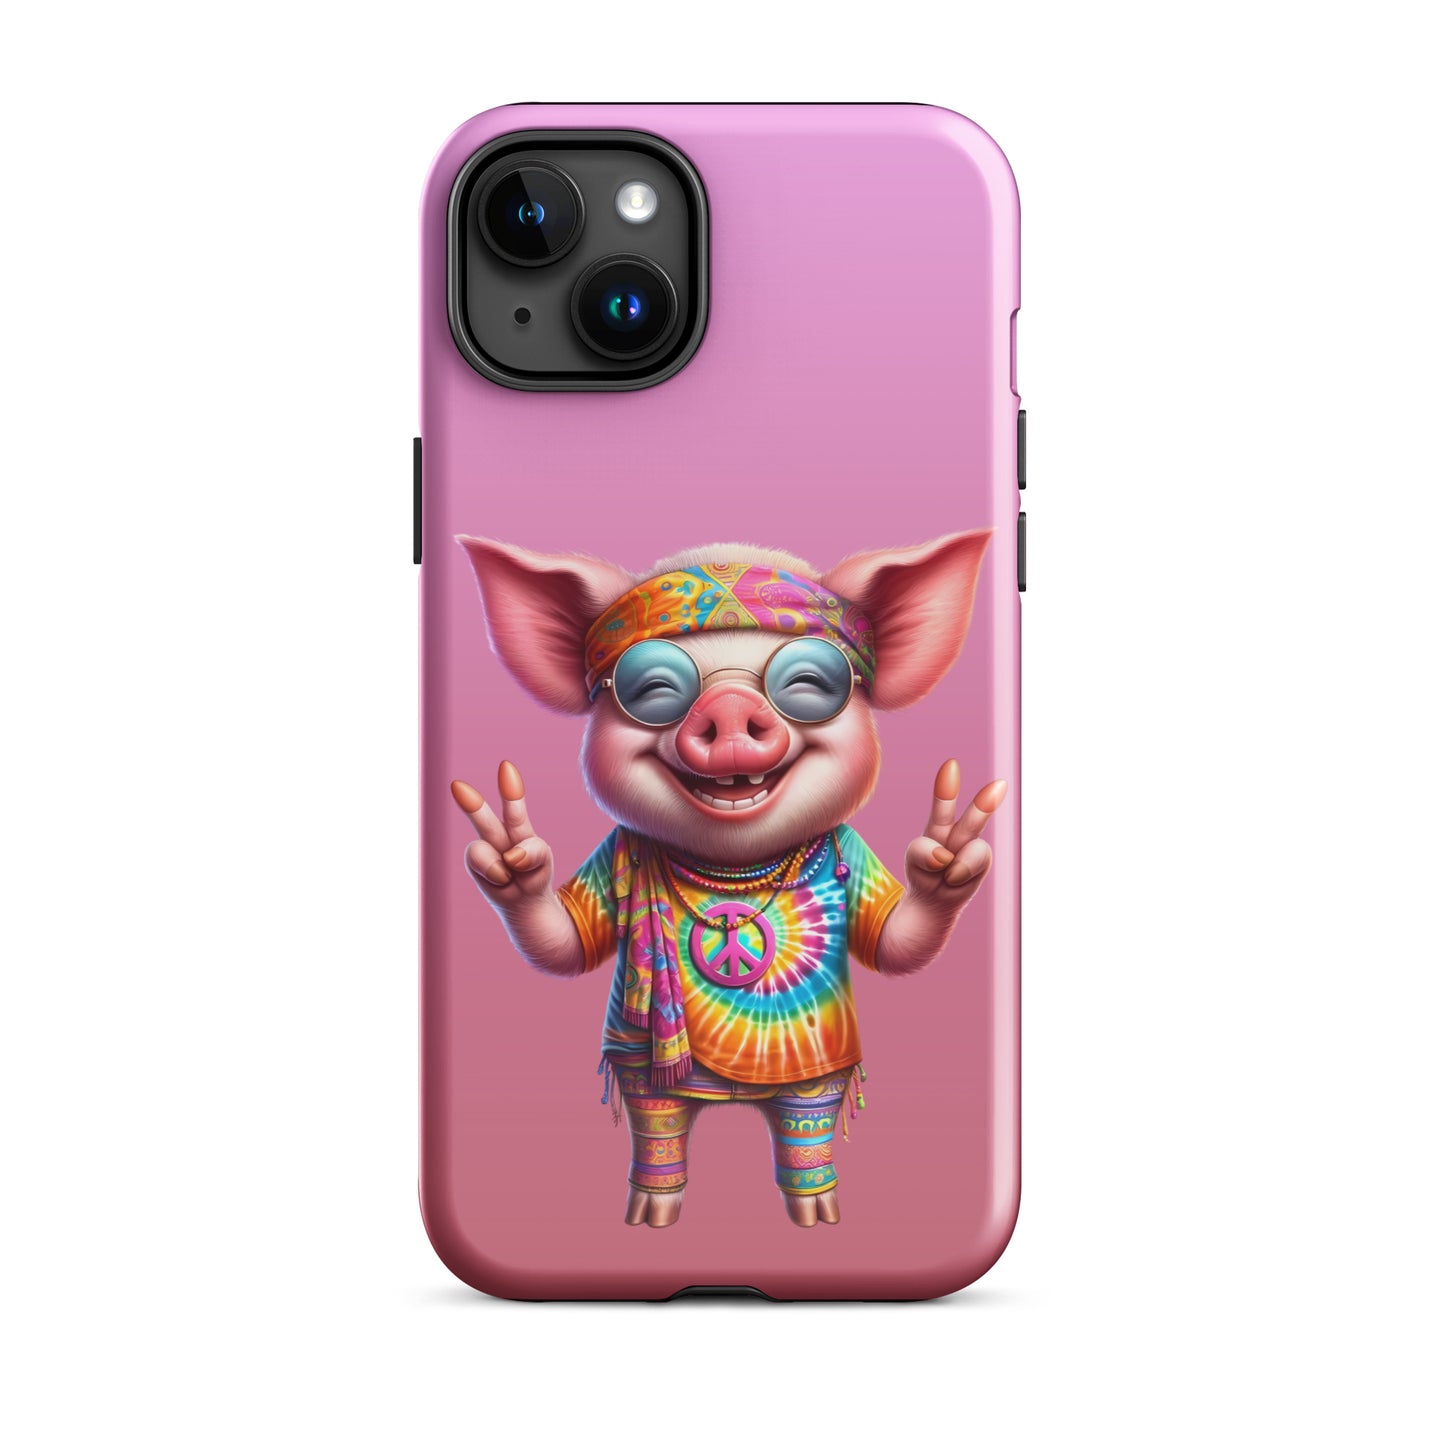 Free-Spirited Hippie Pig iPhone Case